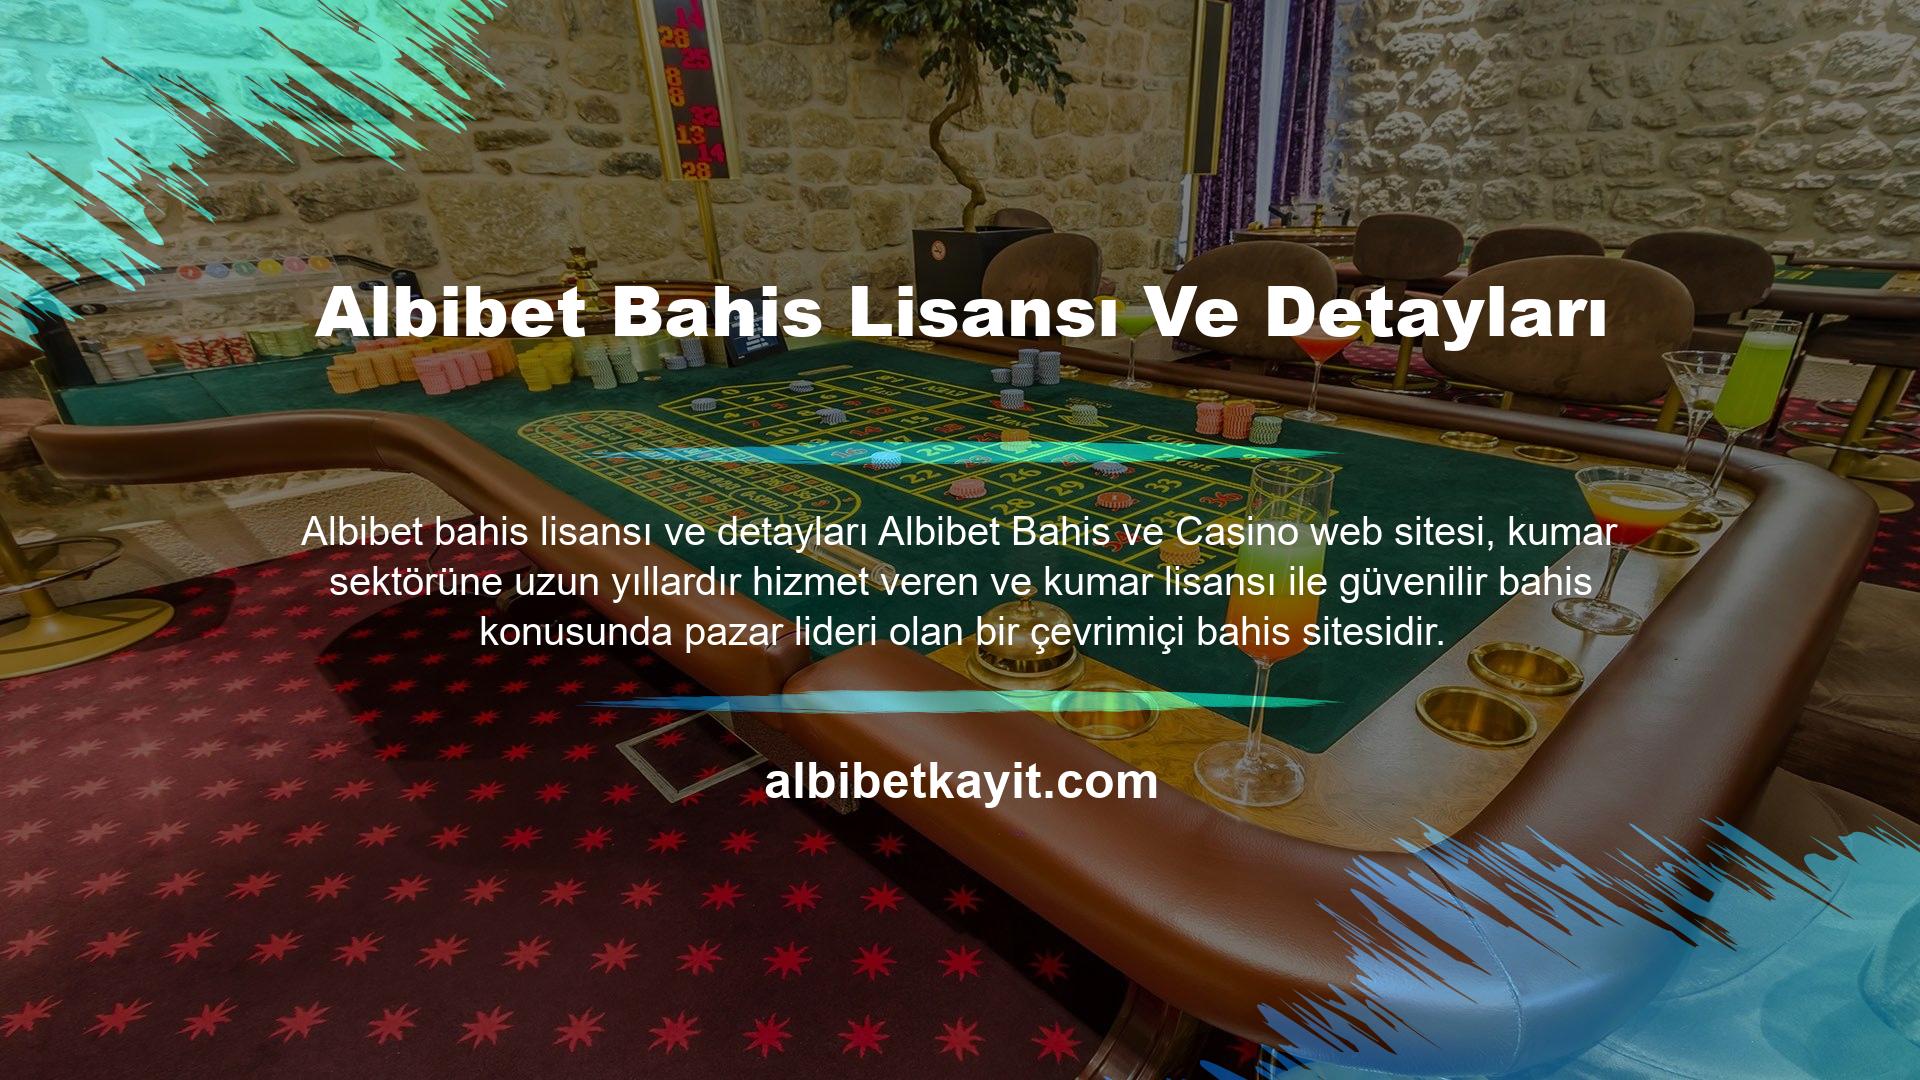 Albibet sitesi müşterilerine onlarca farklı bahis türü sunmaktadır